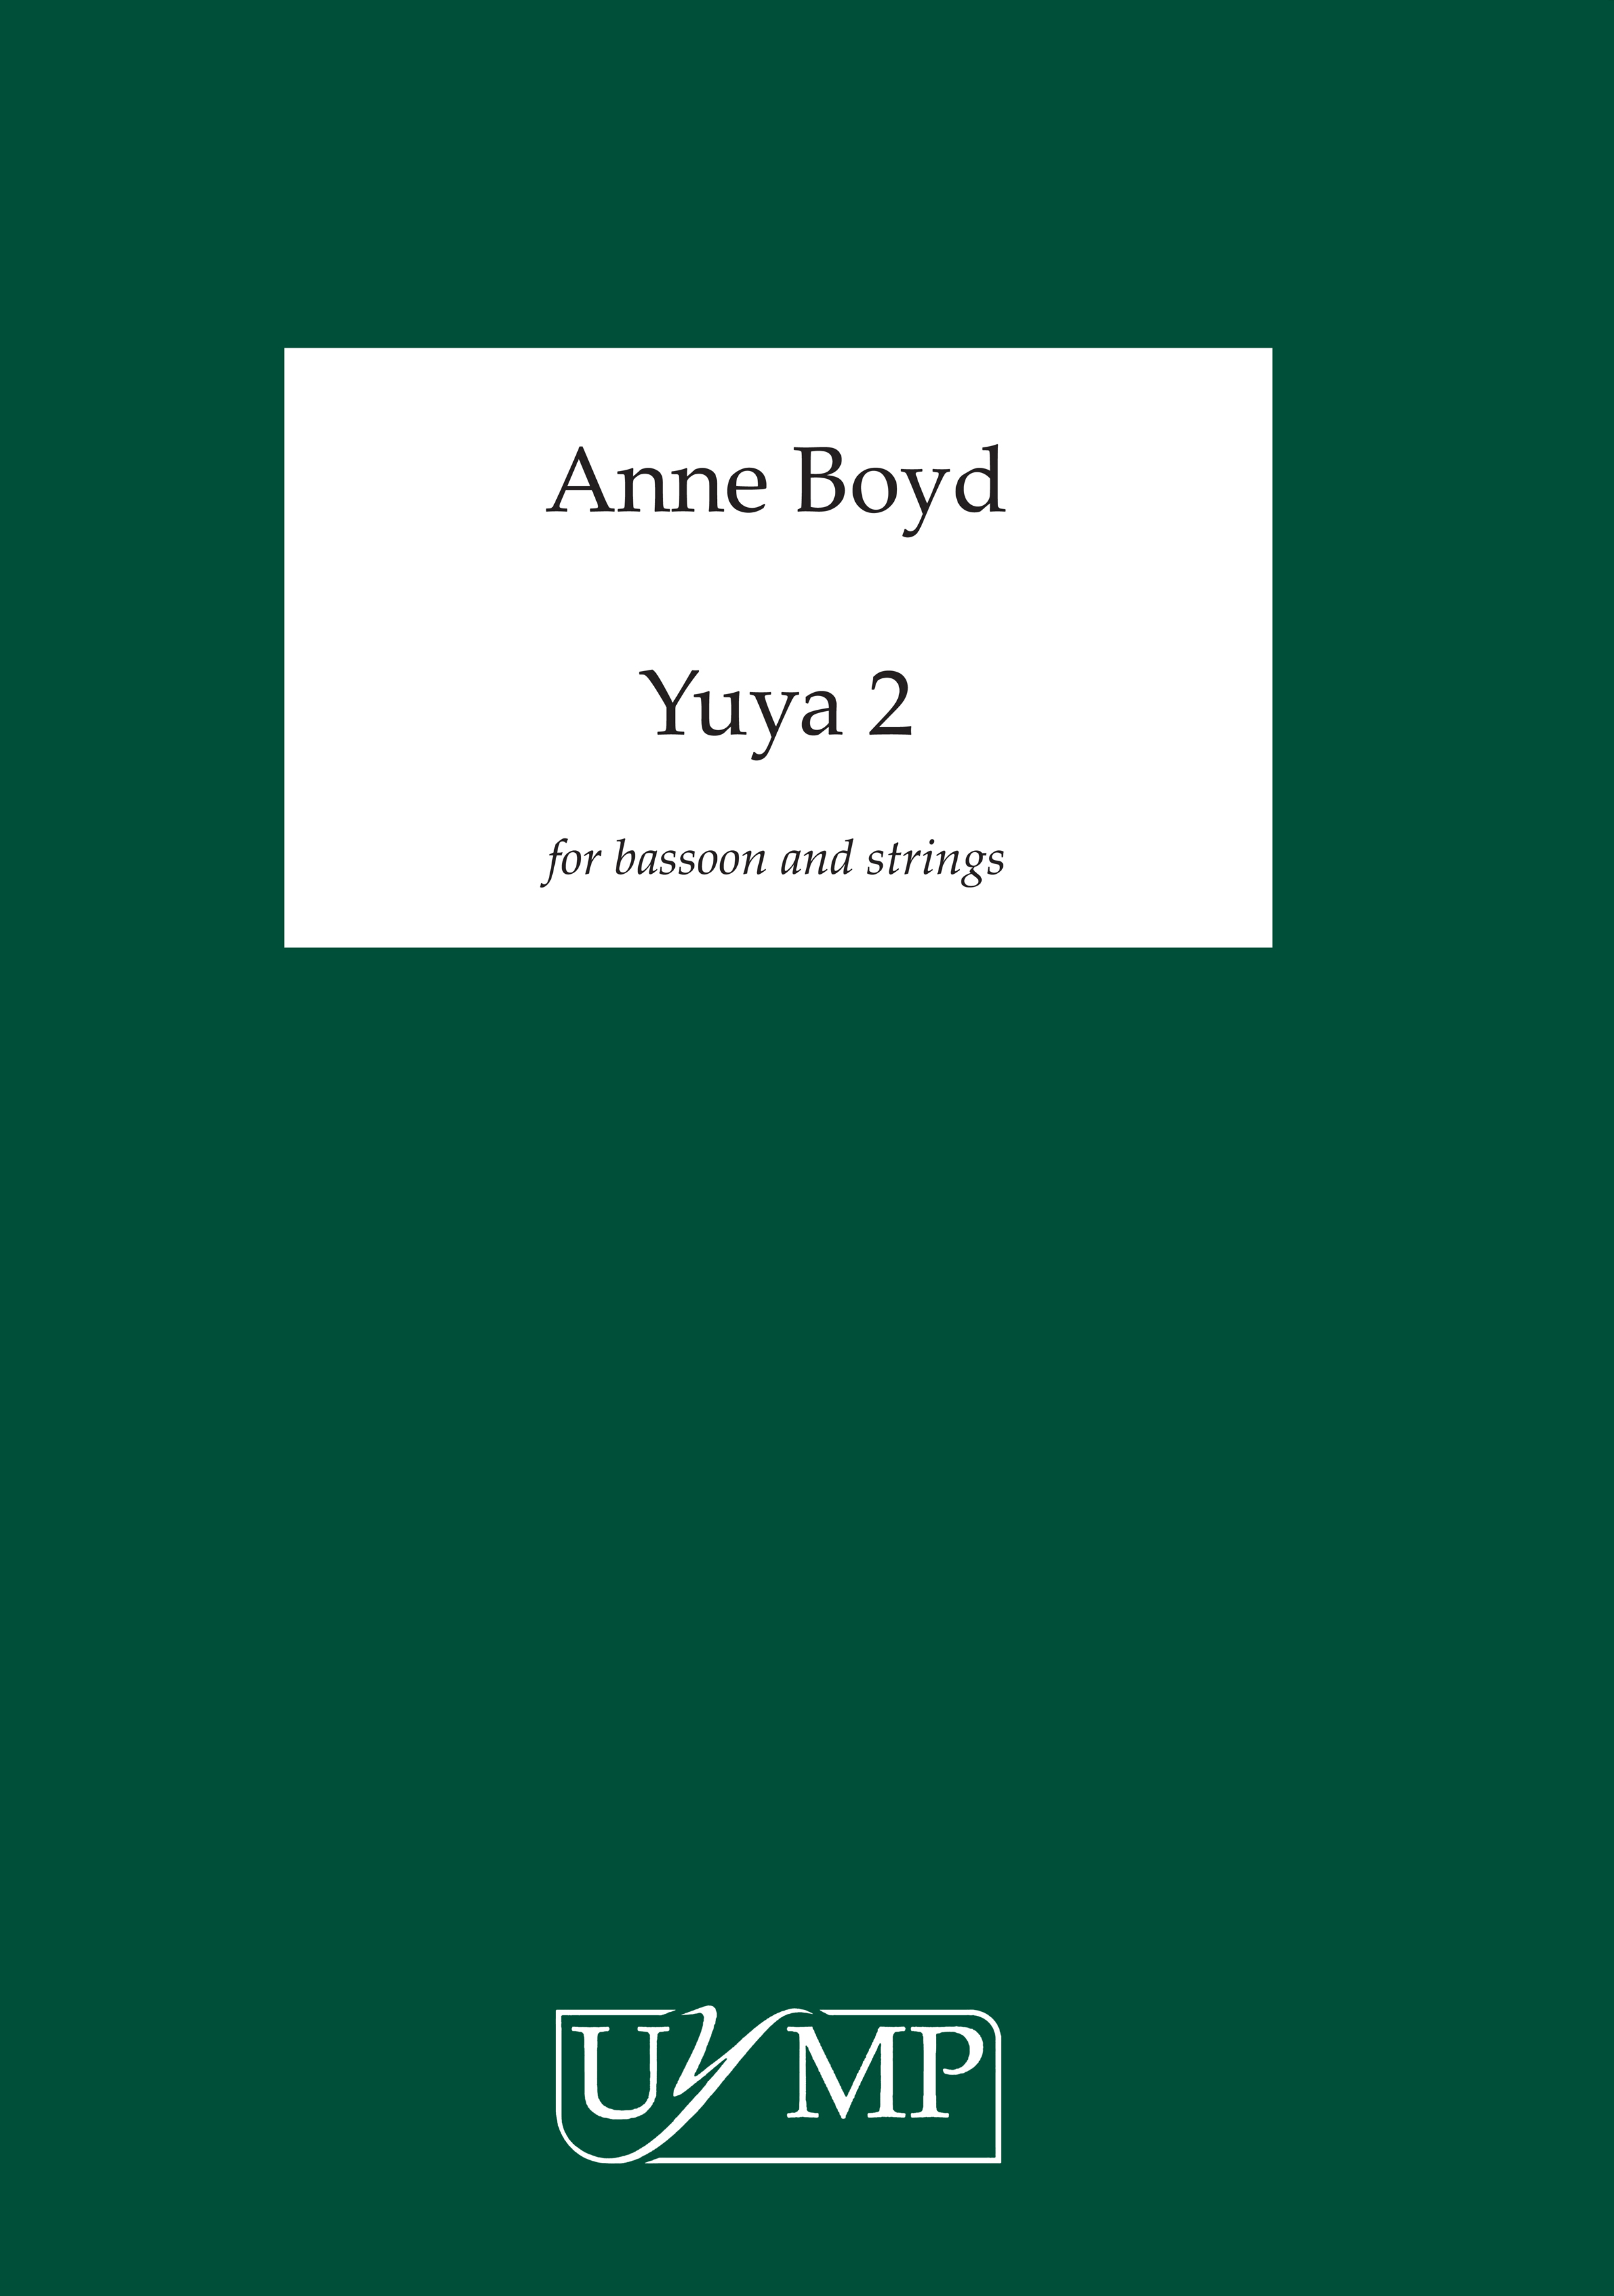 Anne Boyd: Yuya 2